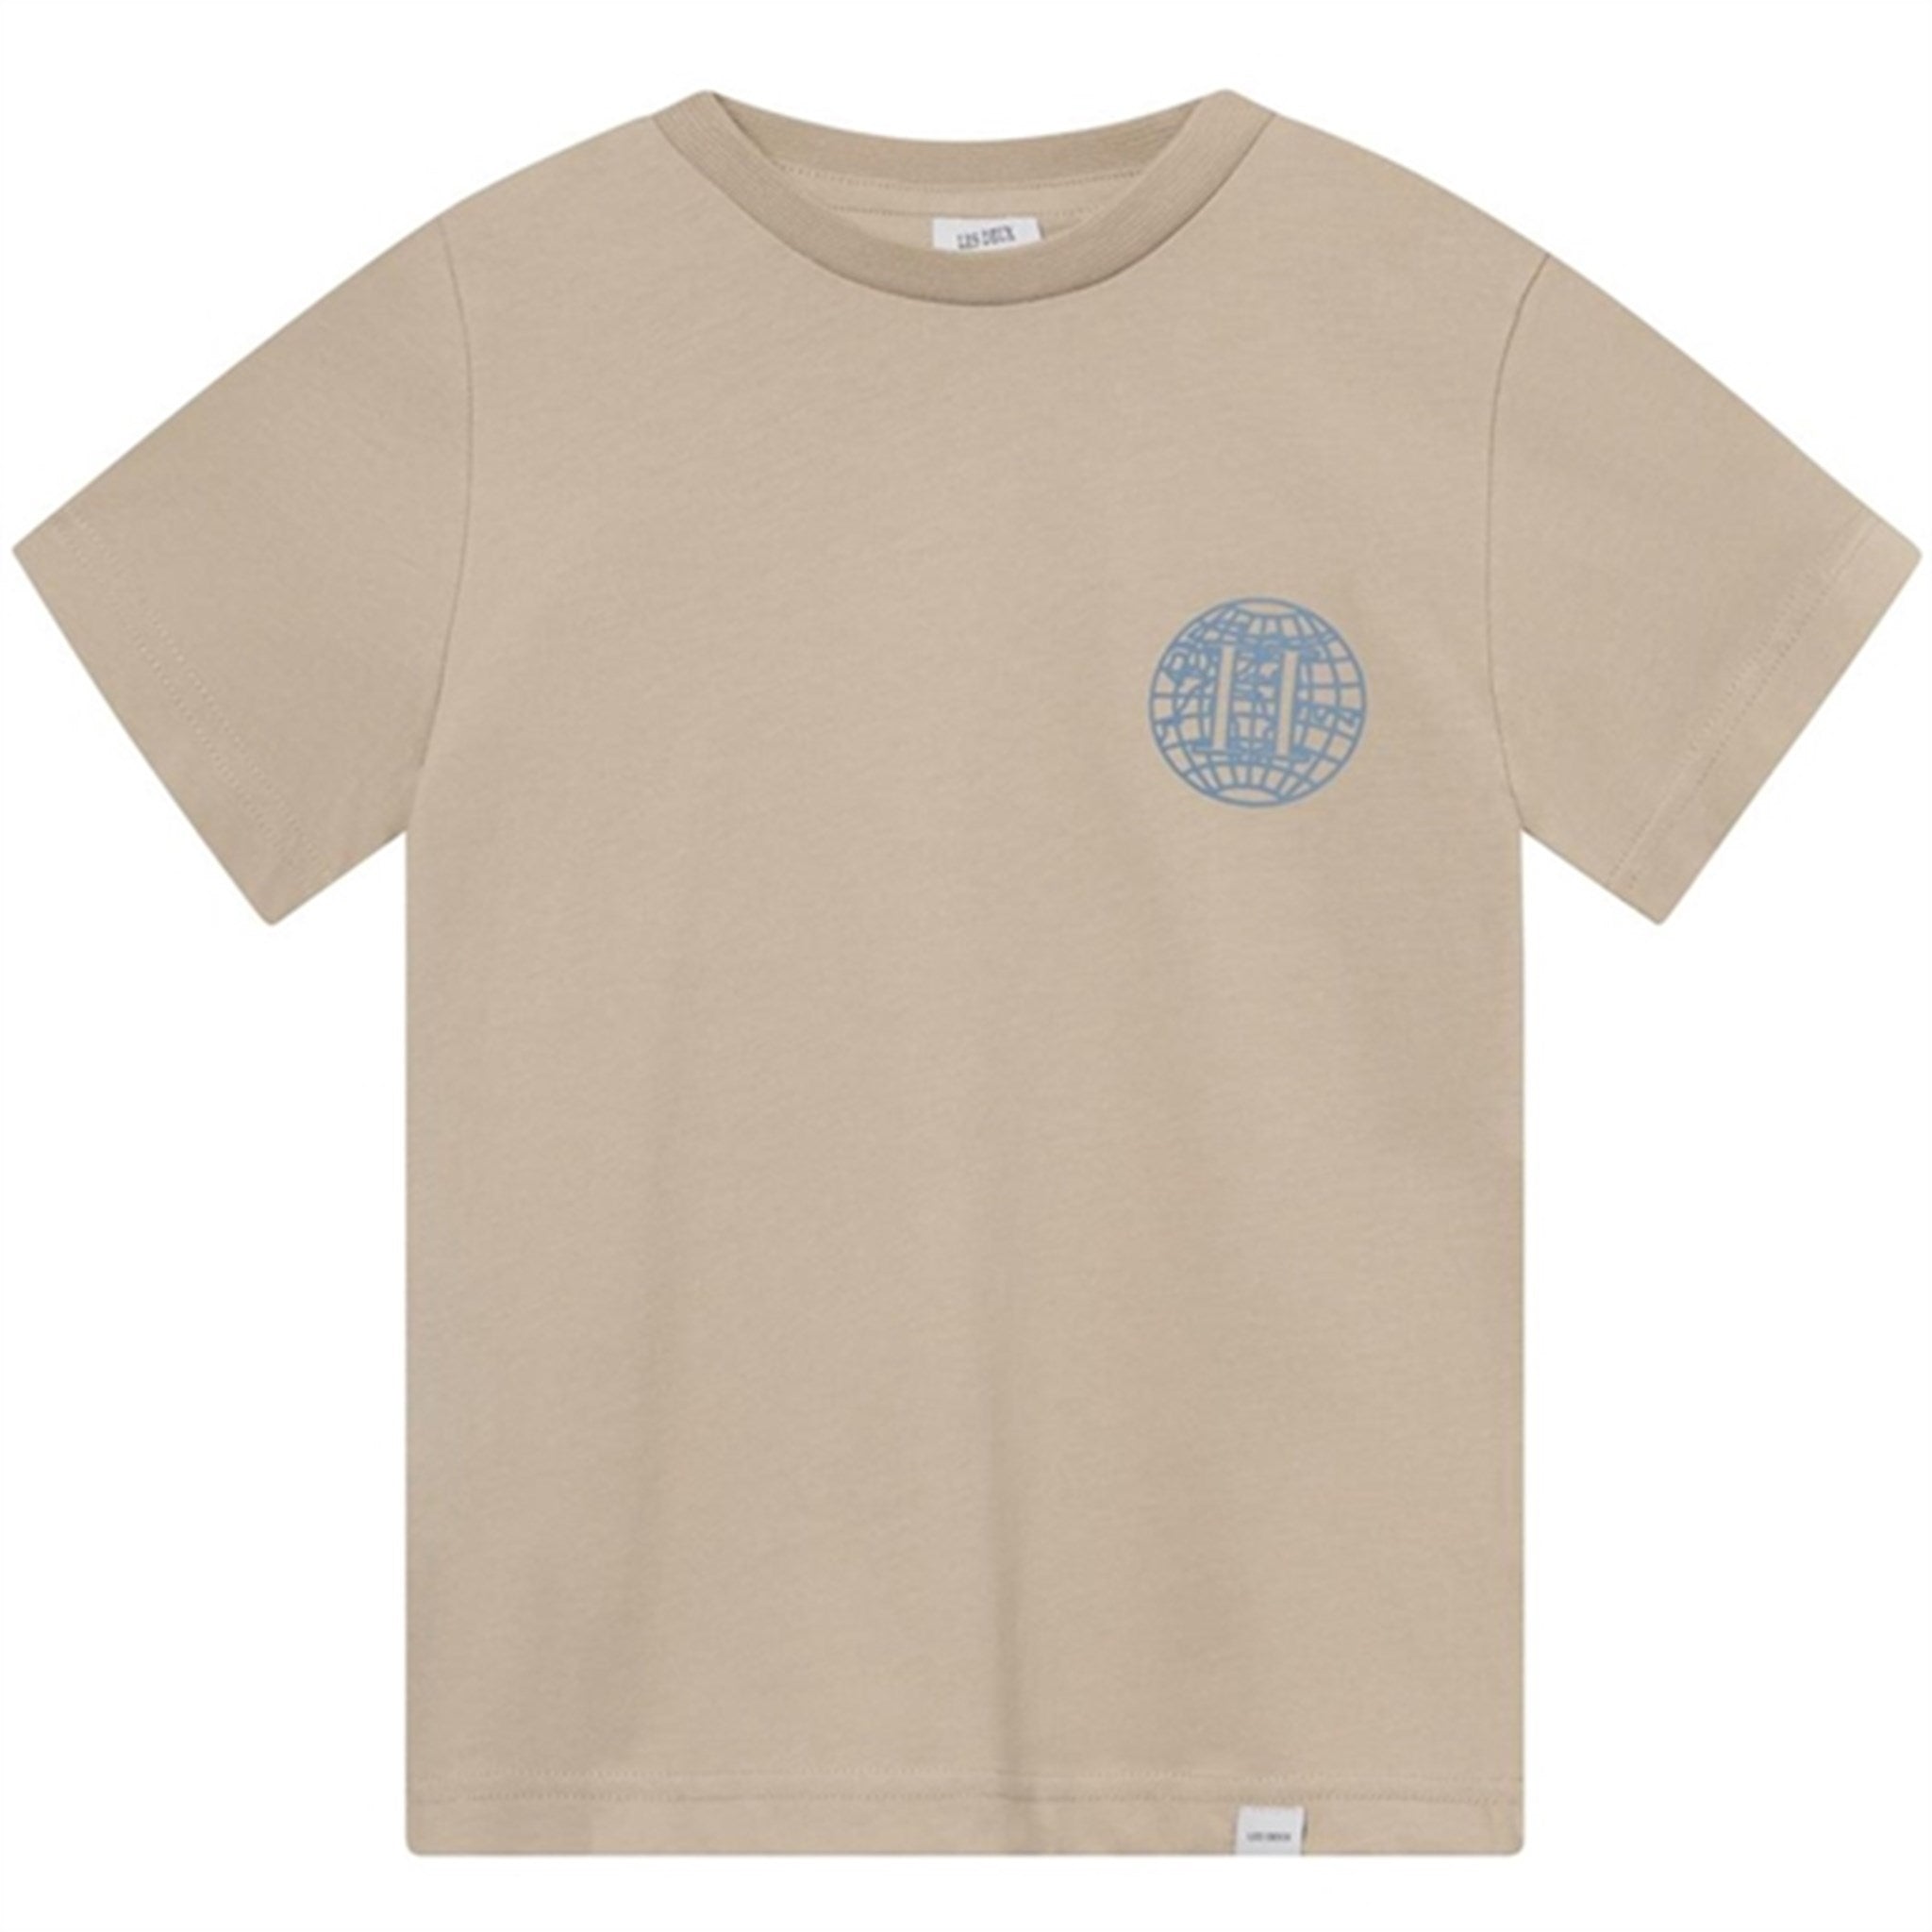 Les Deux Kids Light Desert Sand/Washed Denim Blue Globe T-Shirt - Str. 110/116